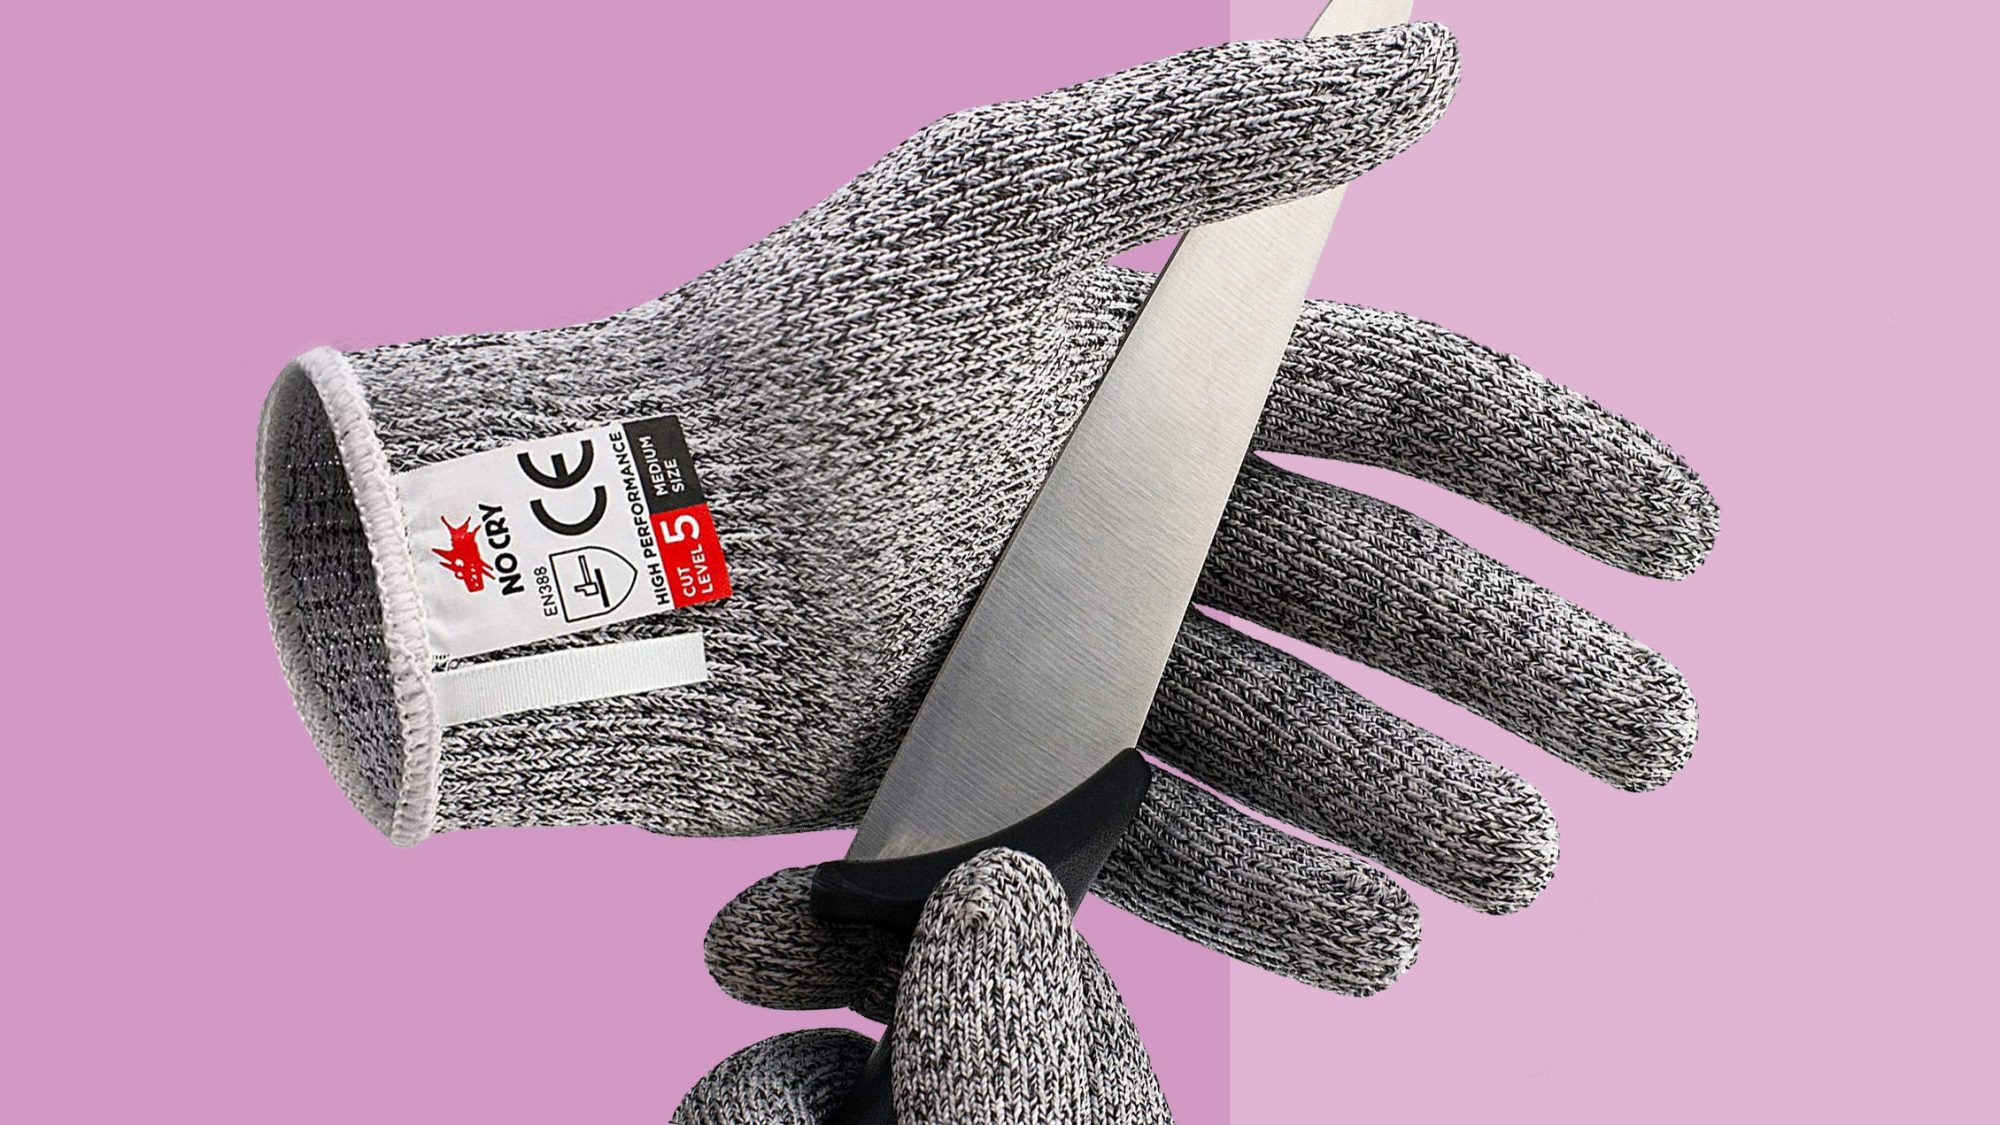 Mer enn 9000 kunder som sverger til disse kuttbestandige hanskene for å beskytte fingrene mens de hakker